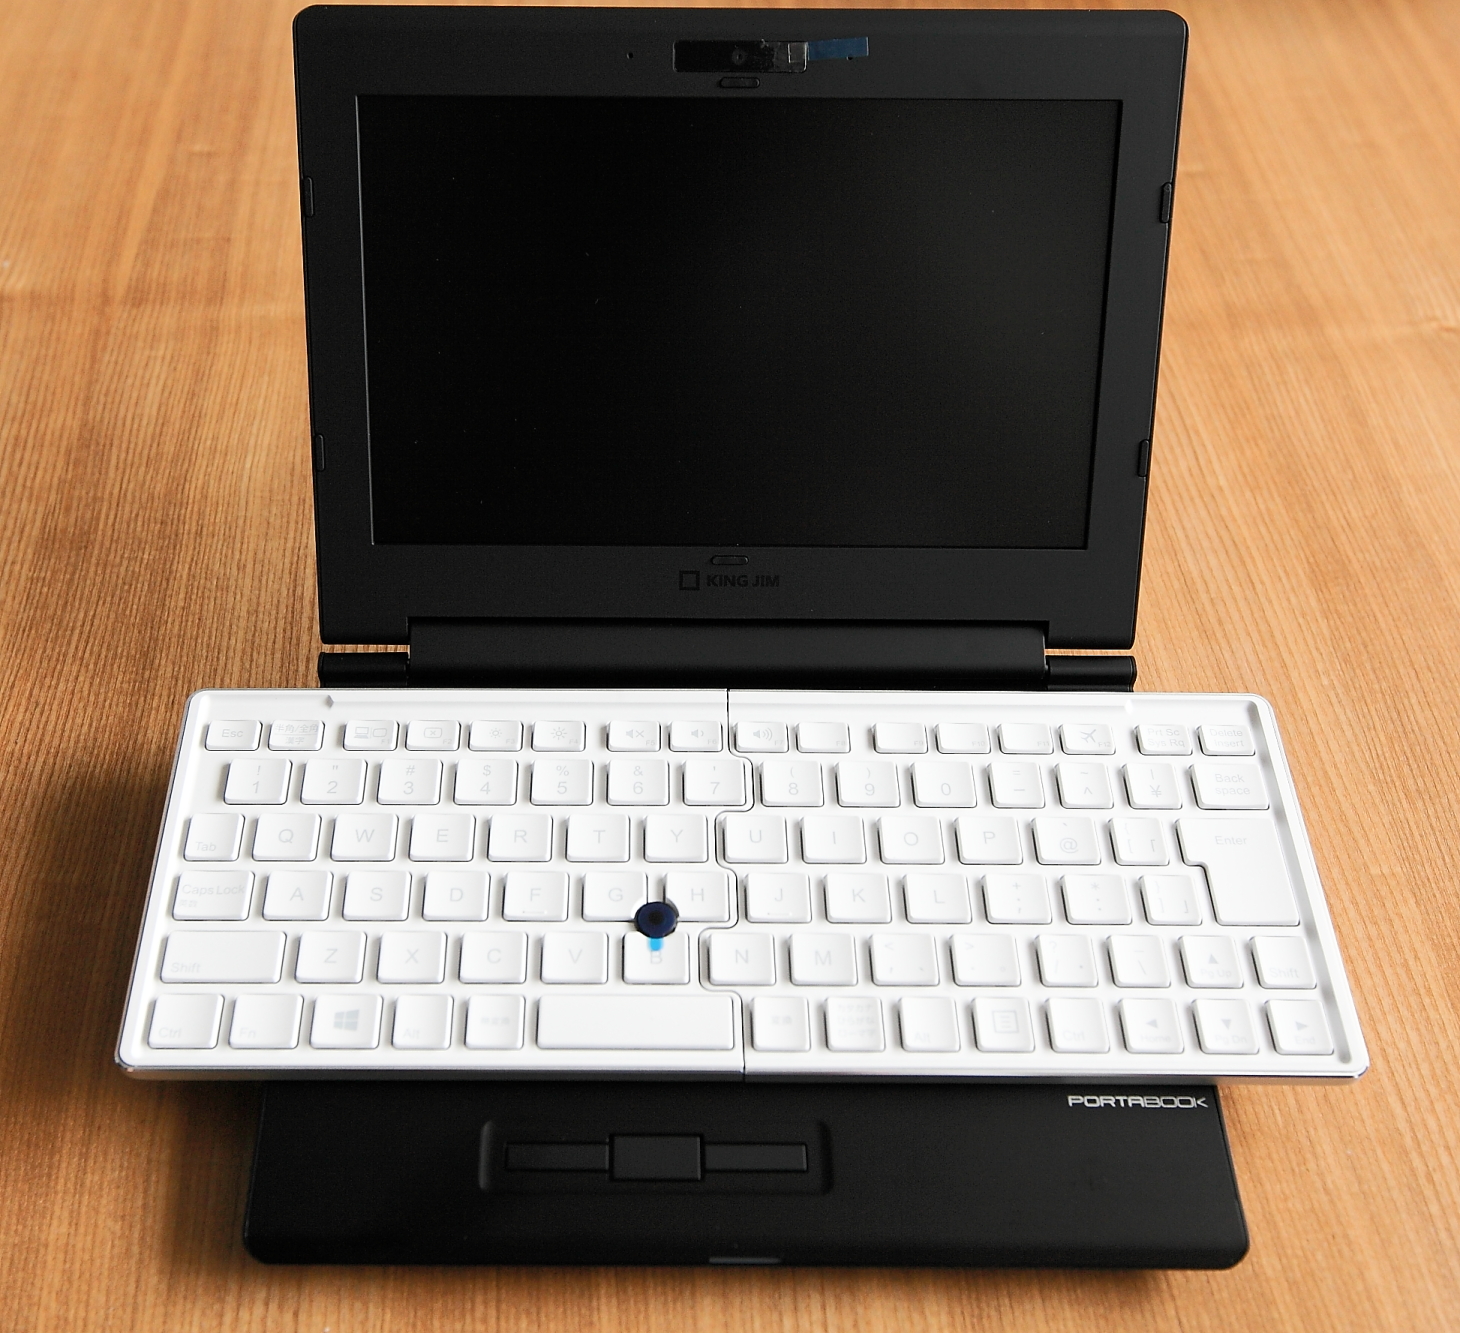 不器用】85 – King Jim – Portabook XMC10 摺疊鍵盤迷你筆電| 不器用